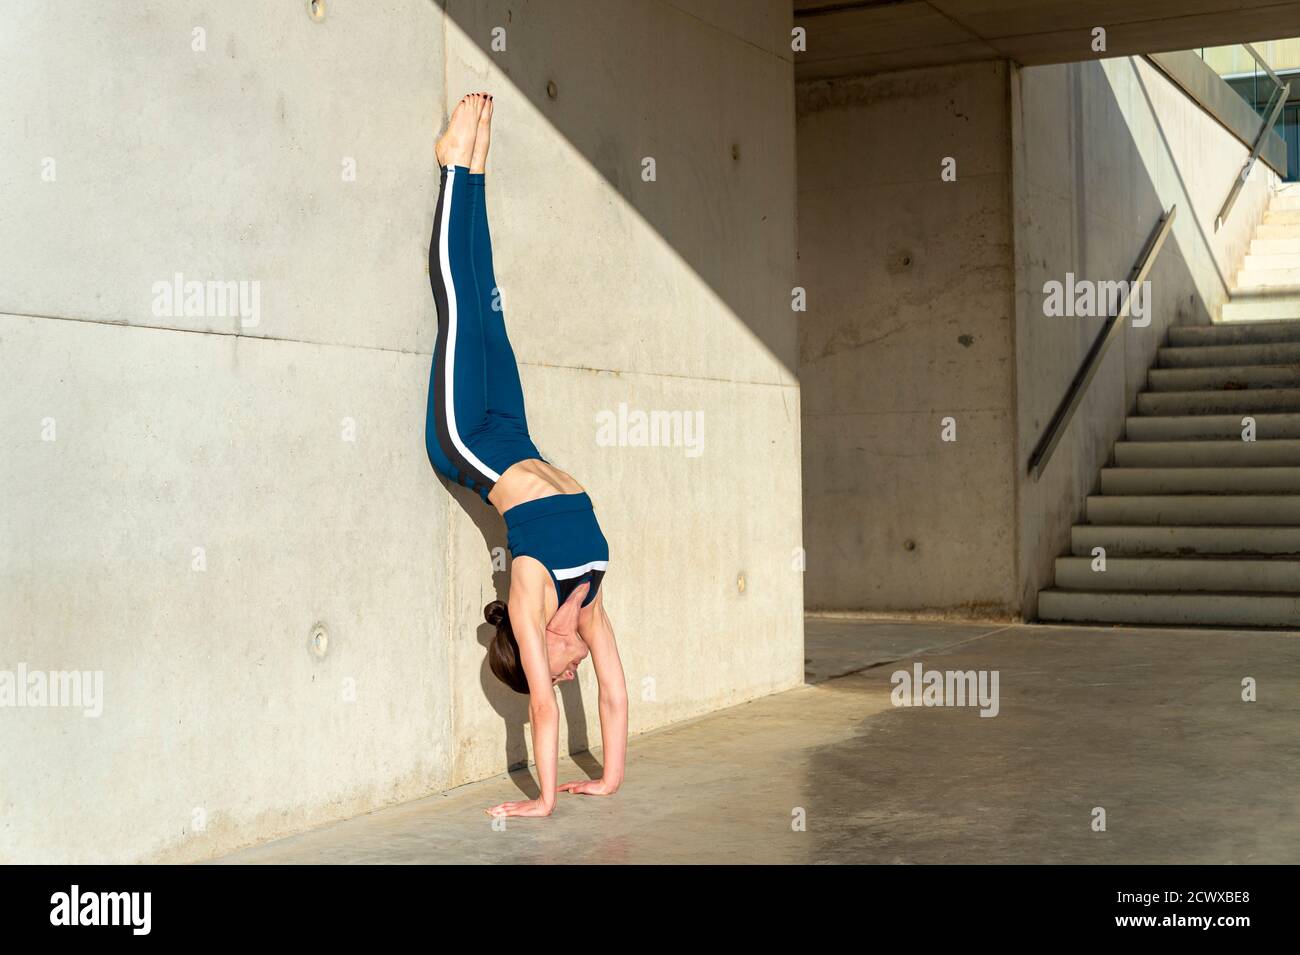 Femme faisant une main contre un mur de béton, yoga urbain. Banque D'Images